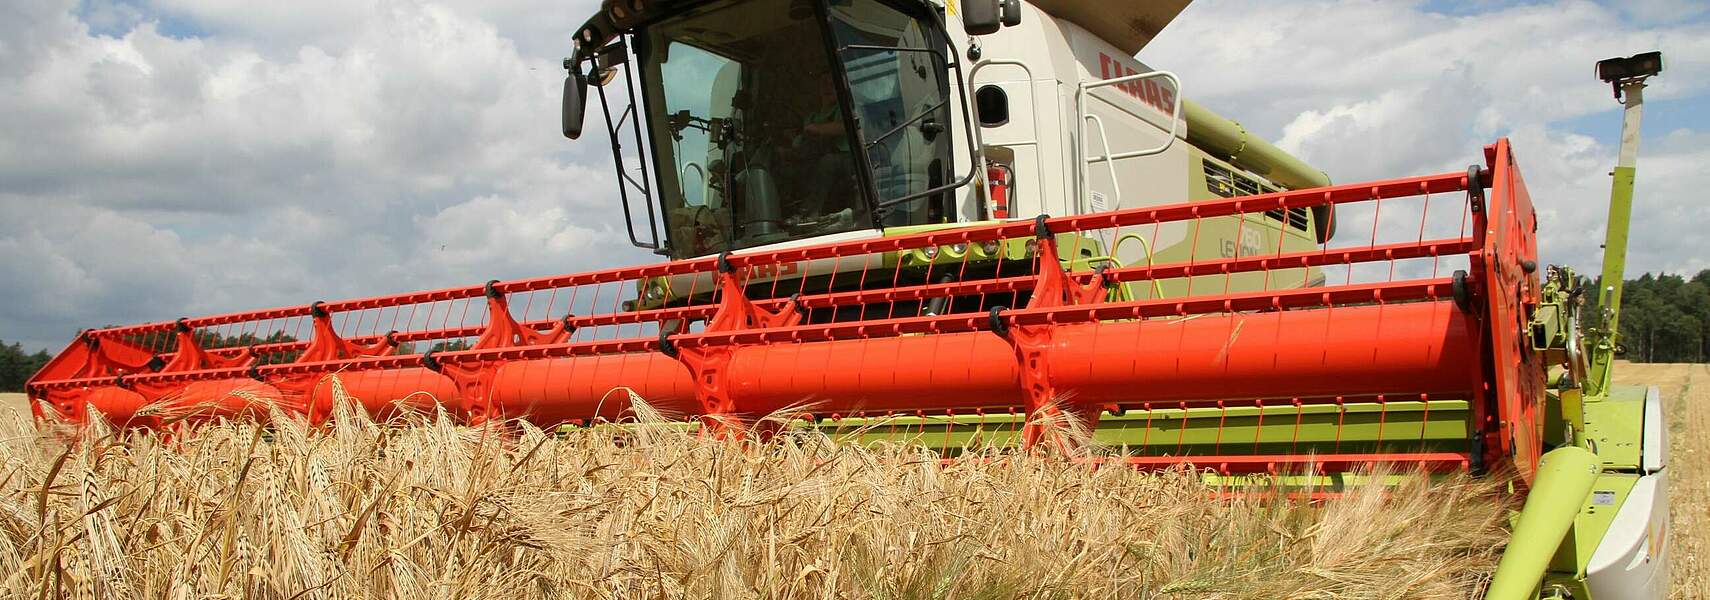 Getreideernte 2021: Regionale Unterschiede bei Erträgen erwartet